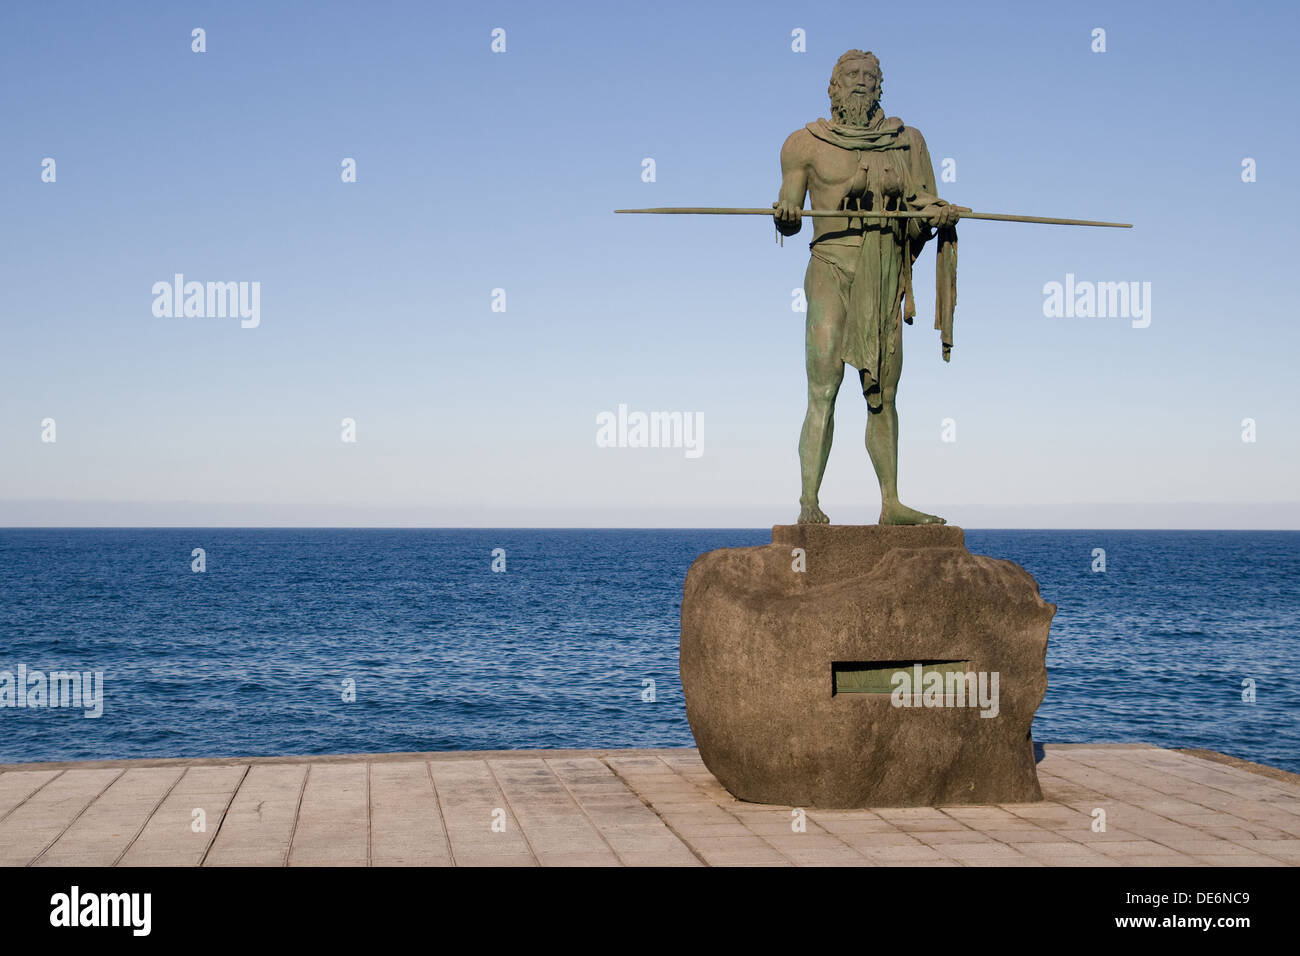 Statue von den Guanchen Mencey Anaterve in Candelaria, Teneriffa, Kanarische Inseln. Stockfoto